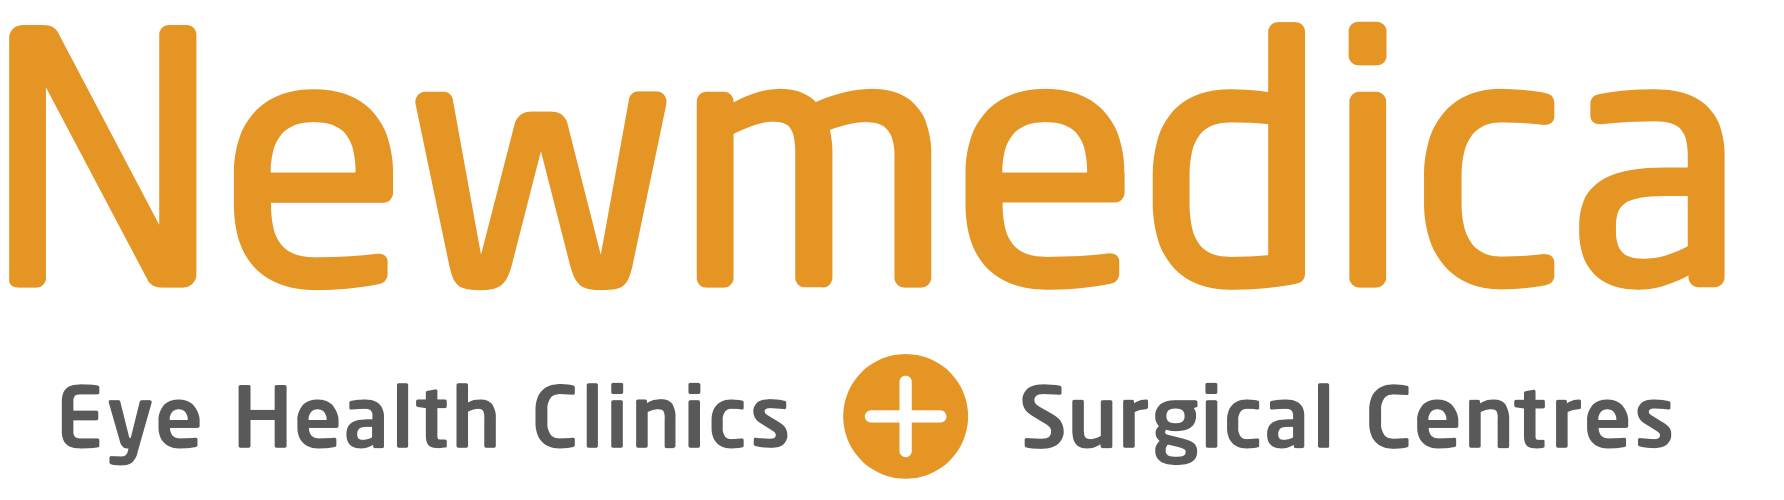 Grimsby - Newmedica logo